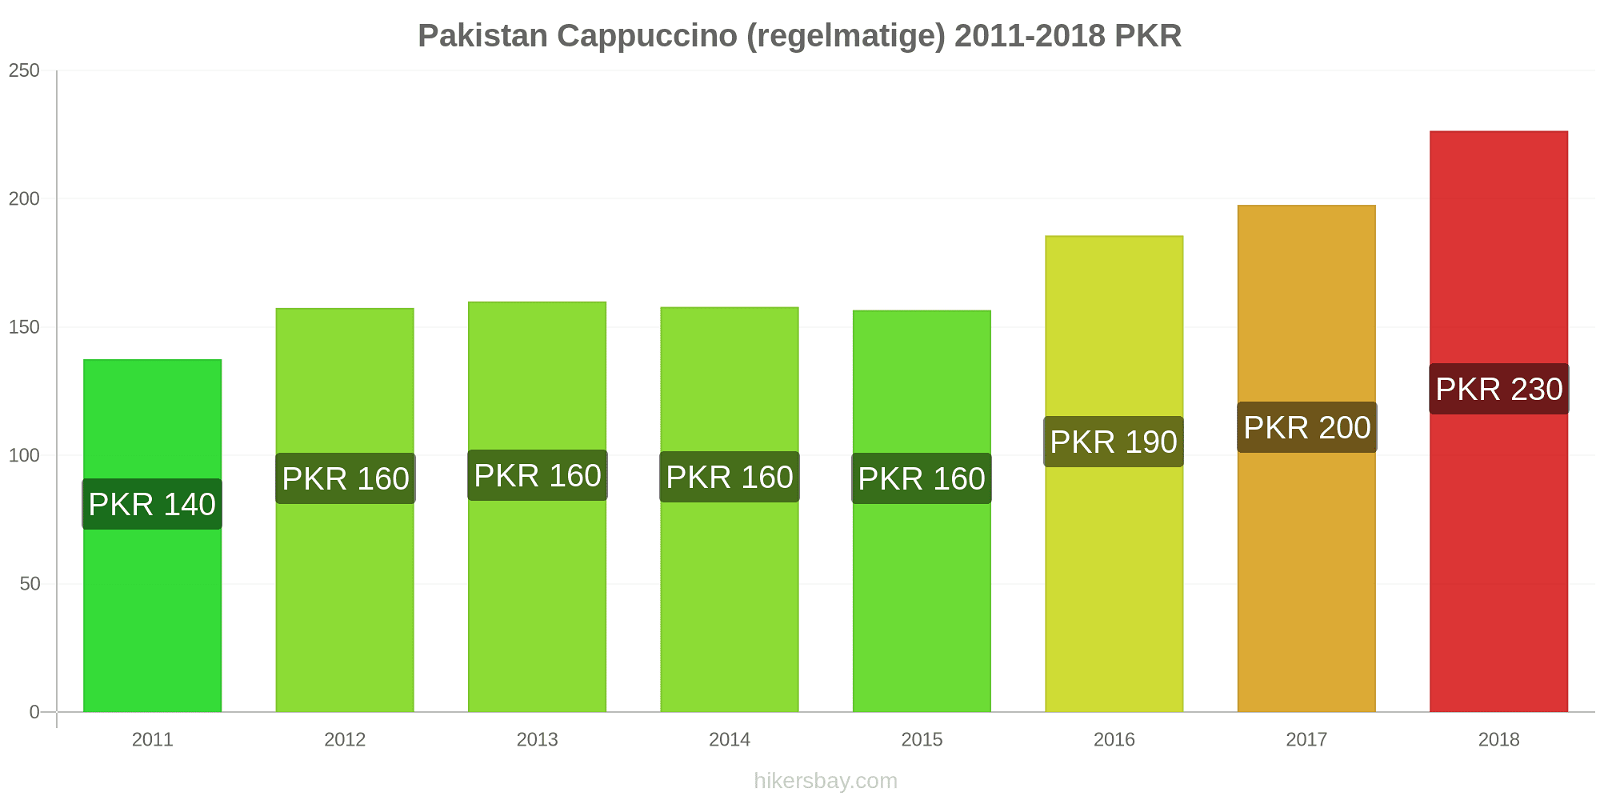 Pakistan prijswijzigingen Cappuccino hikersbay.com